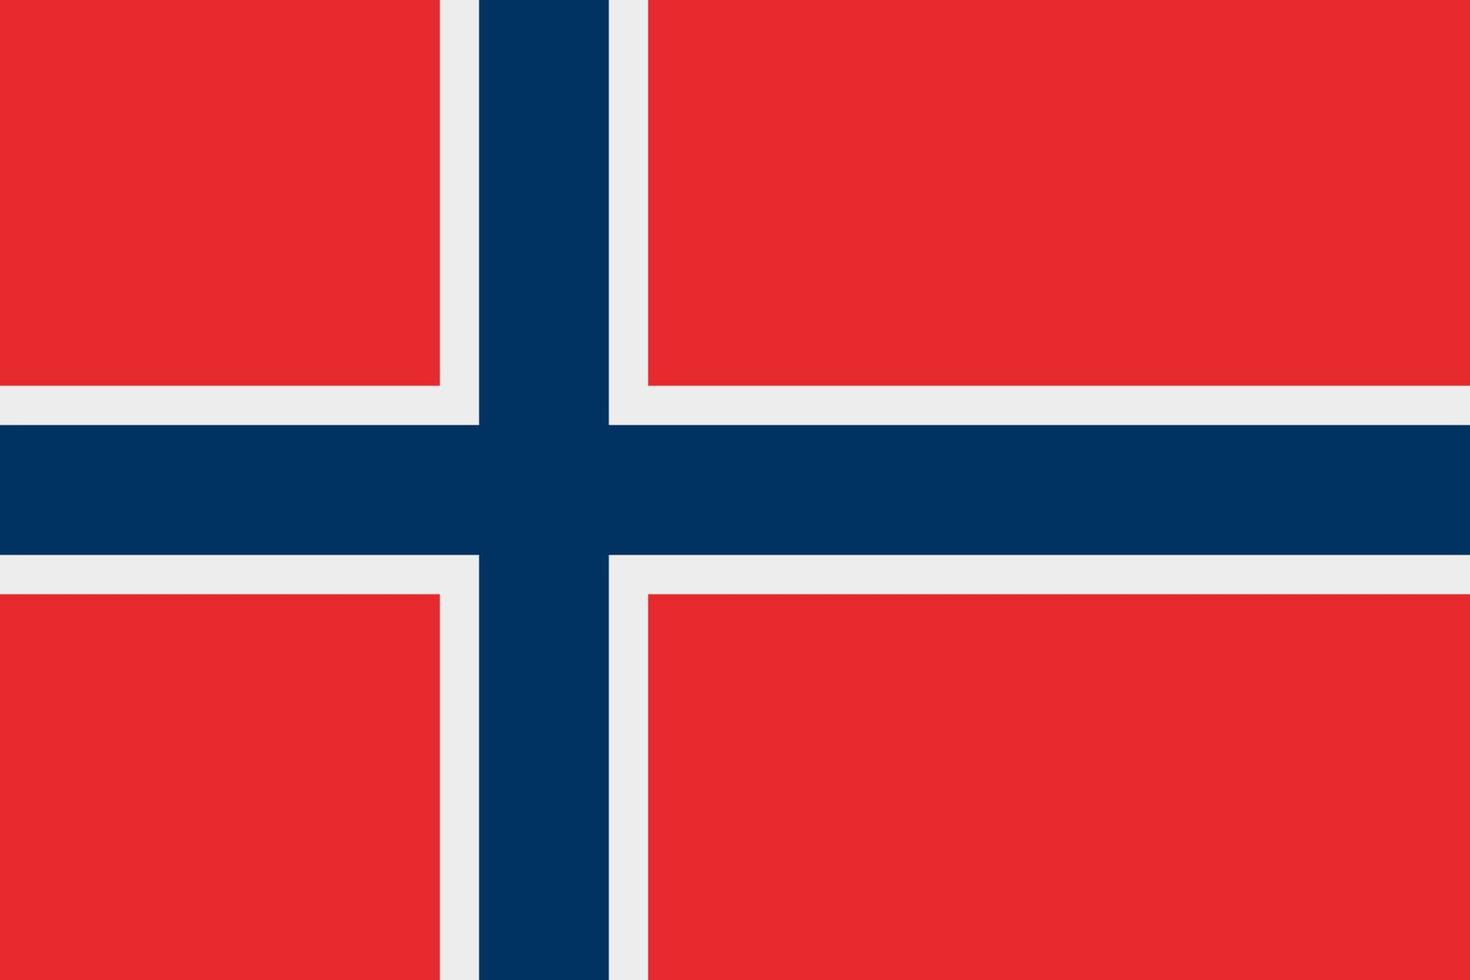 Noorse vlag vector pictogram. de vlag van noorwegen